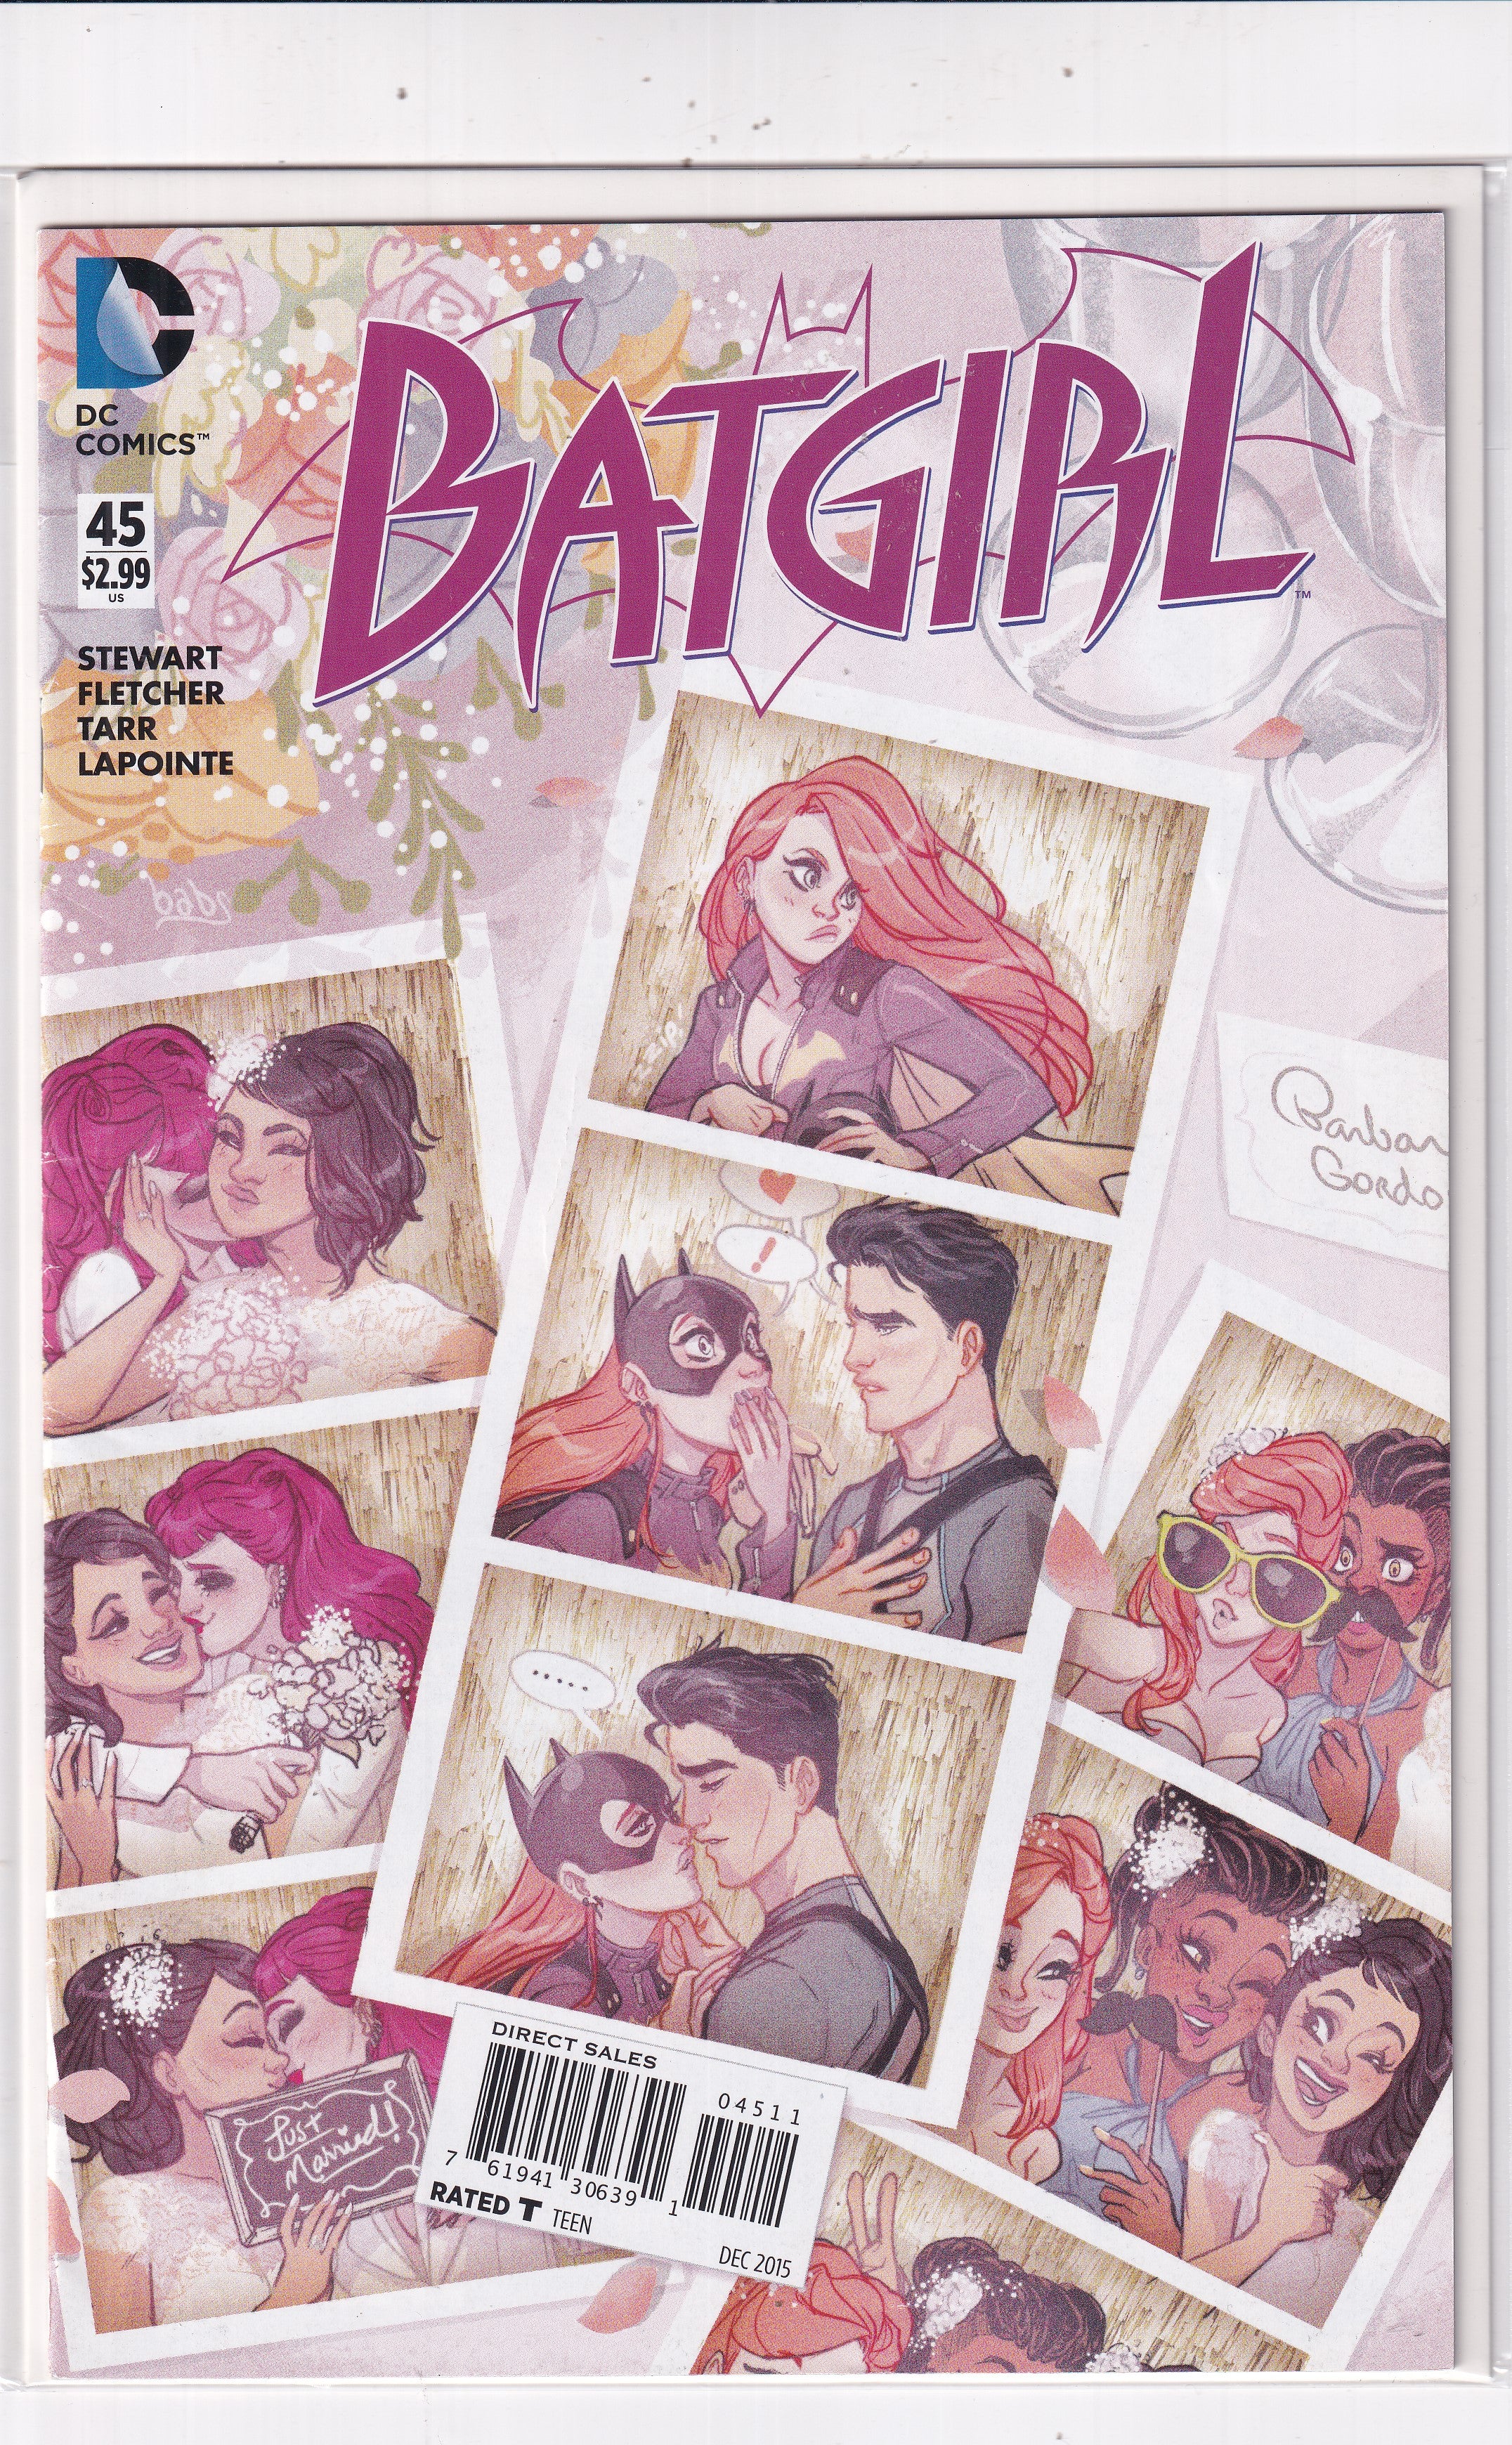 BATGIRL #45 - Slab City Comics 